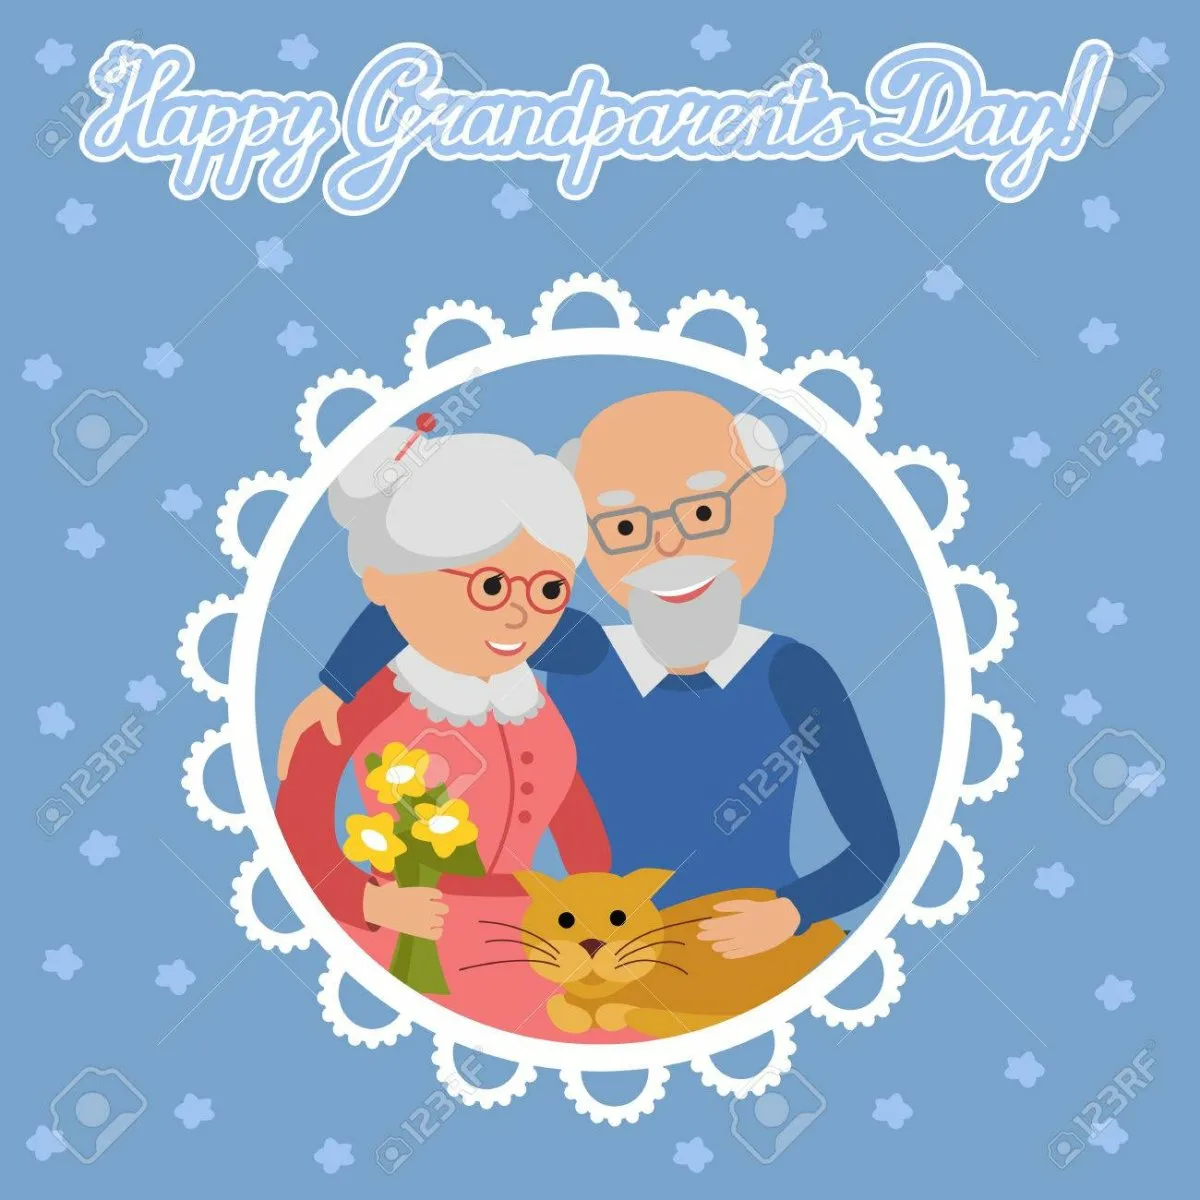 Фото Поздравление дедушке и бабушке со свадьбой 30 лет от внуков #62